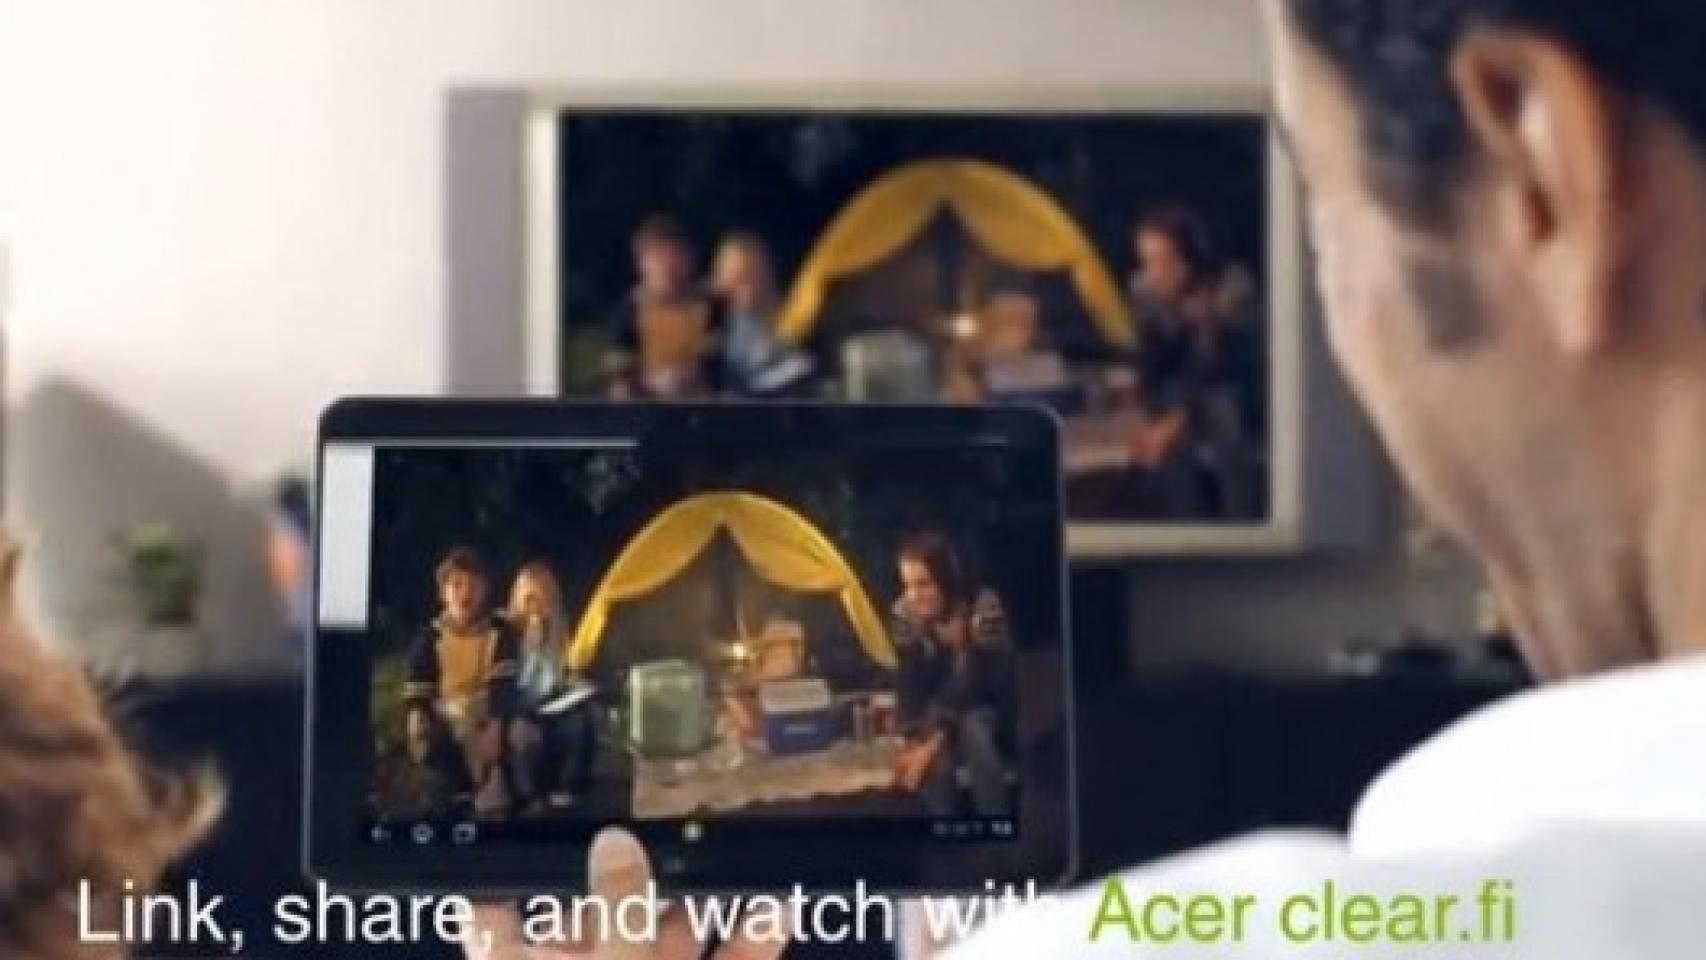 Acer Iconia A200, la nueva Tablet se presenta en sociedad con un vídeo